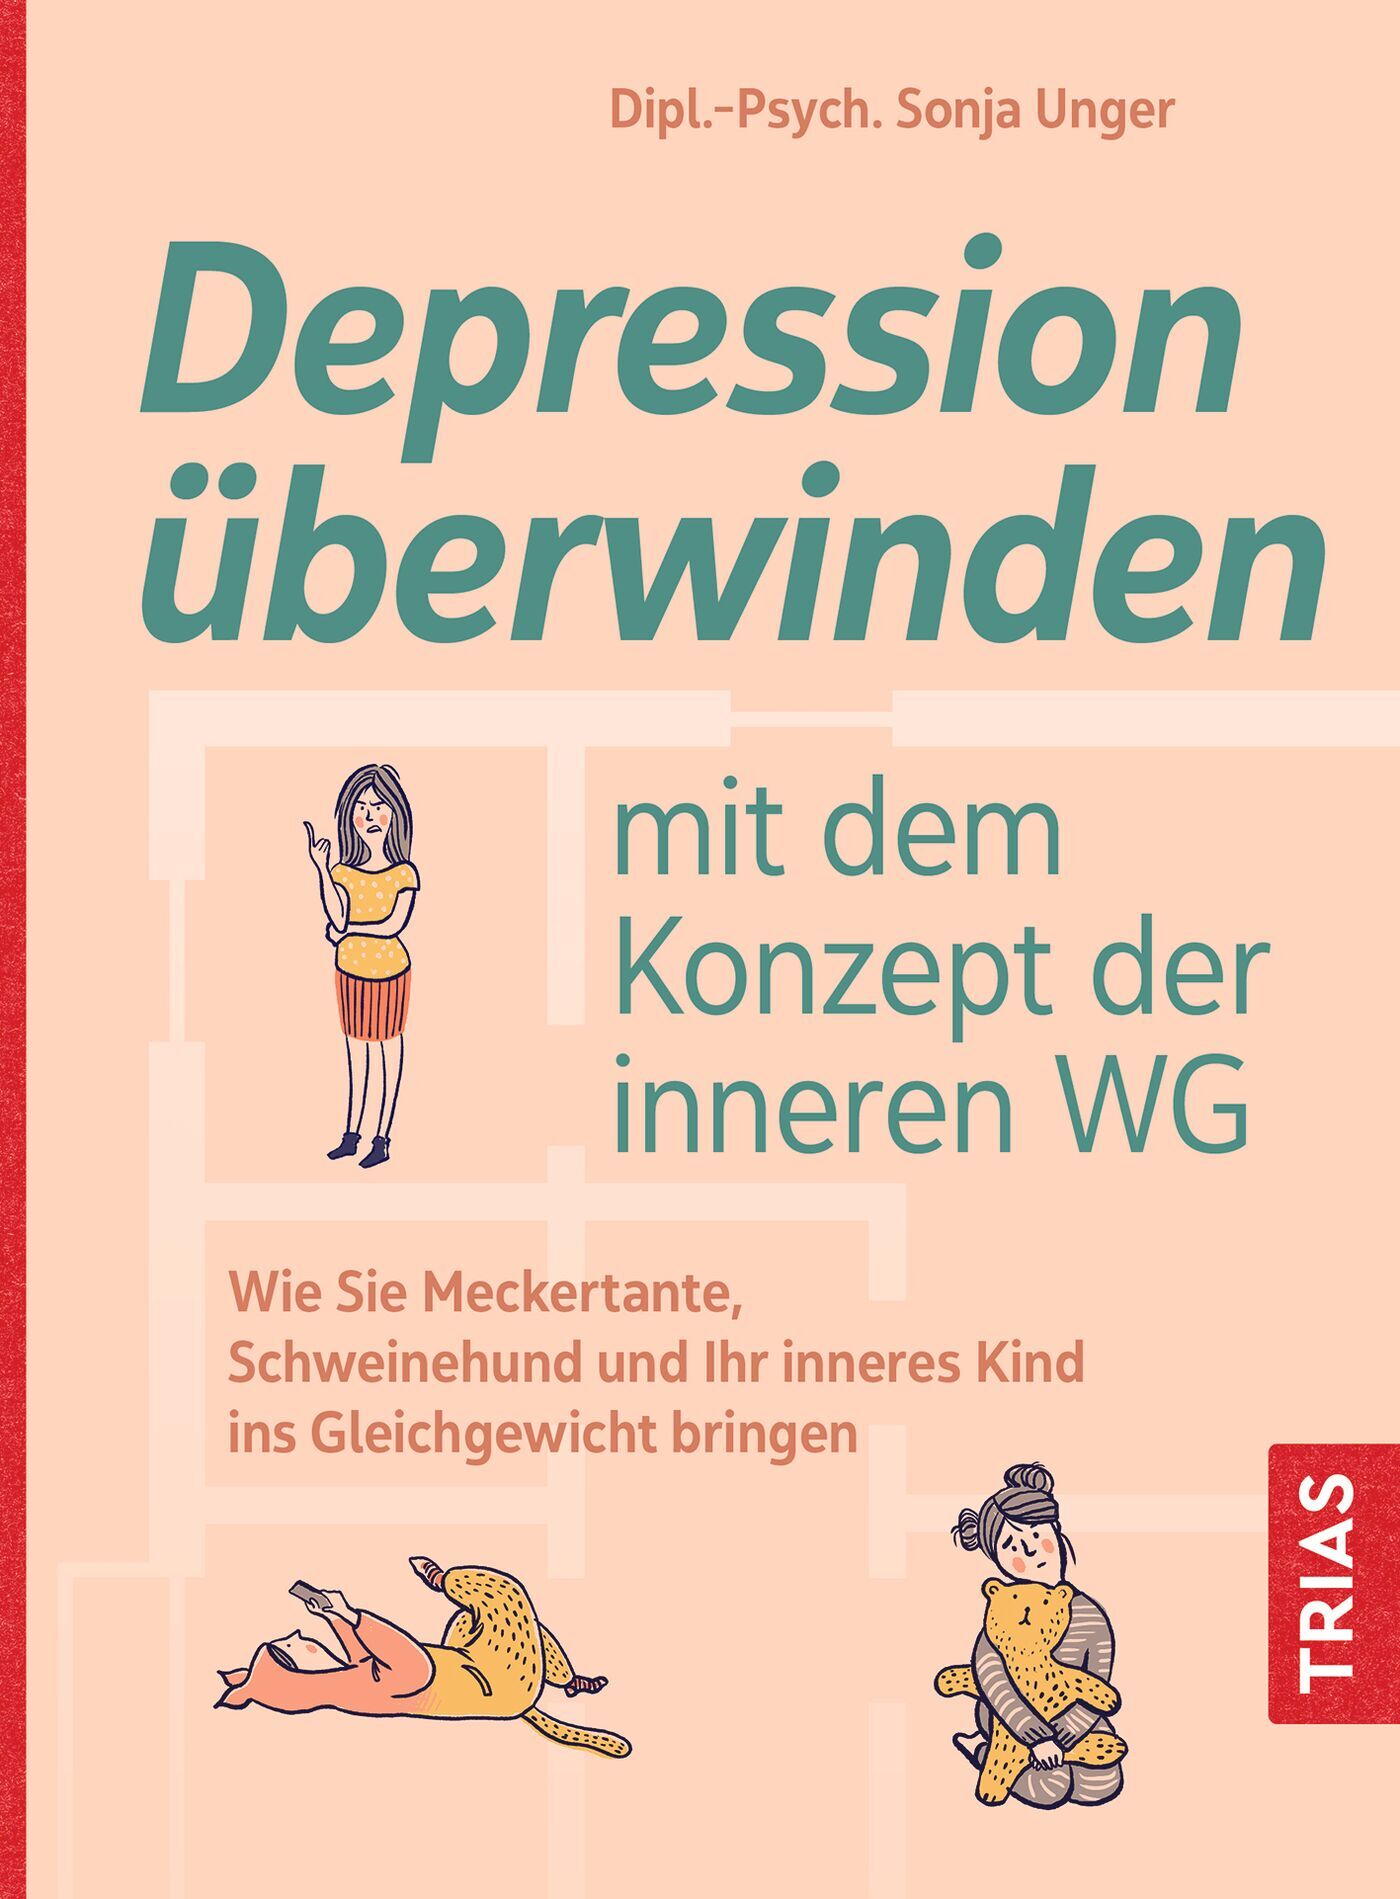 Depression überwinden mit dem Konzept der inneren WG, 9783432115481